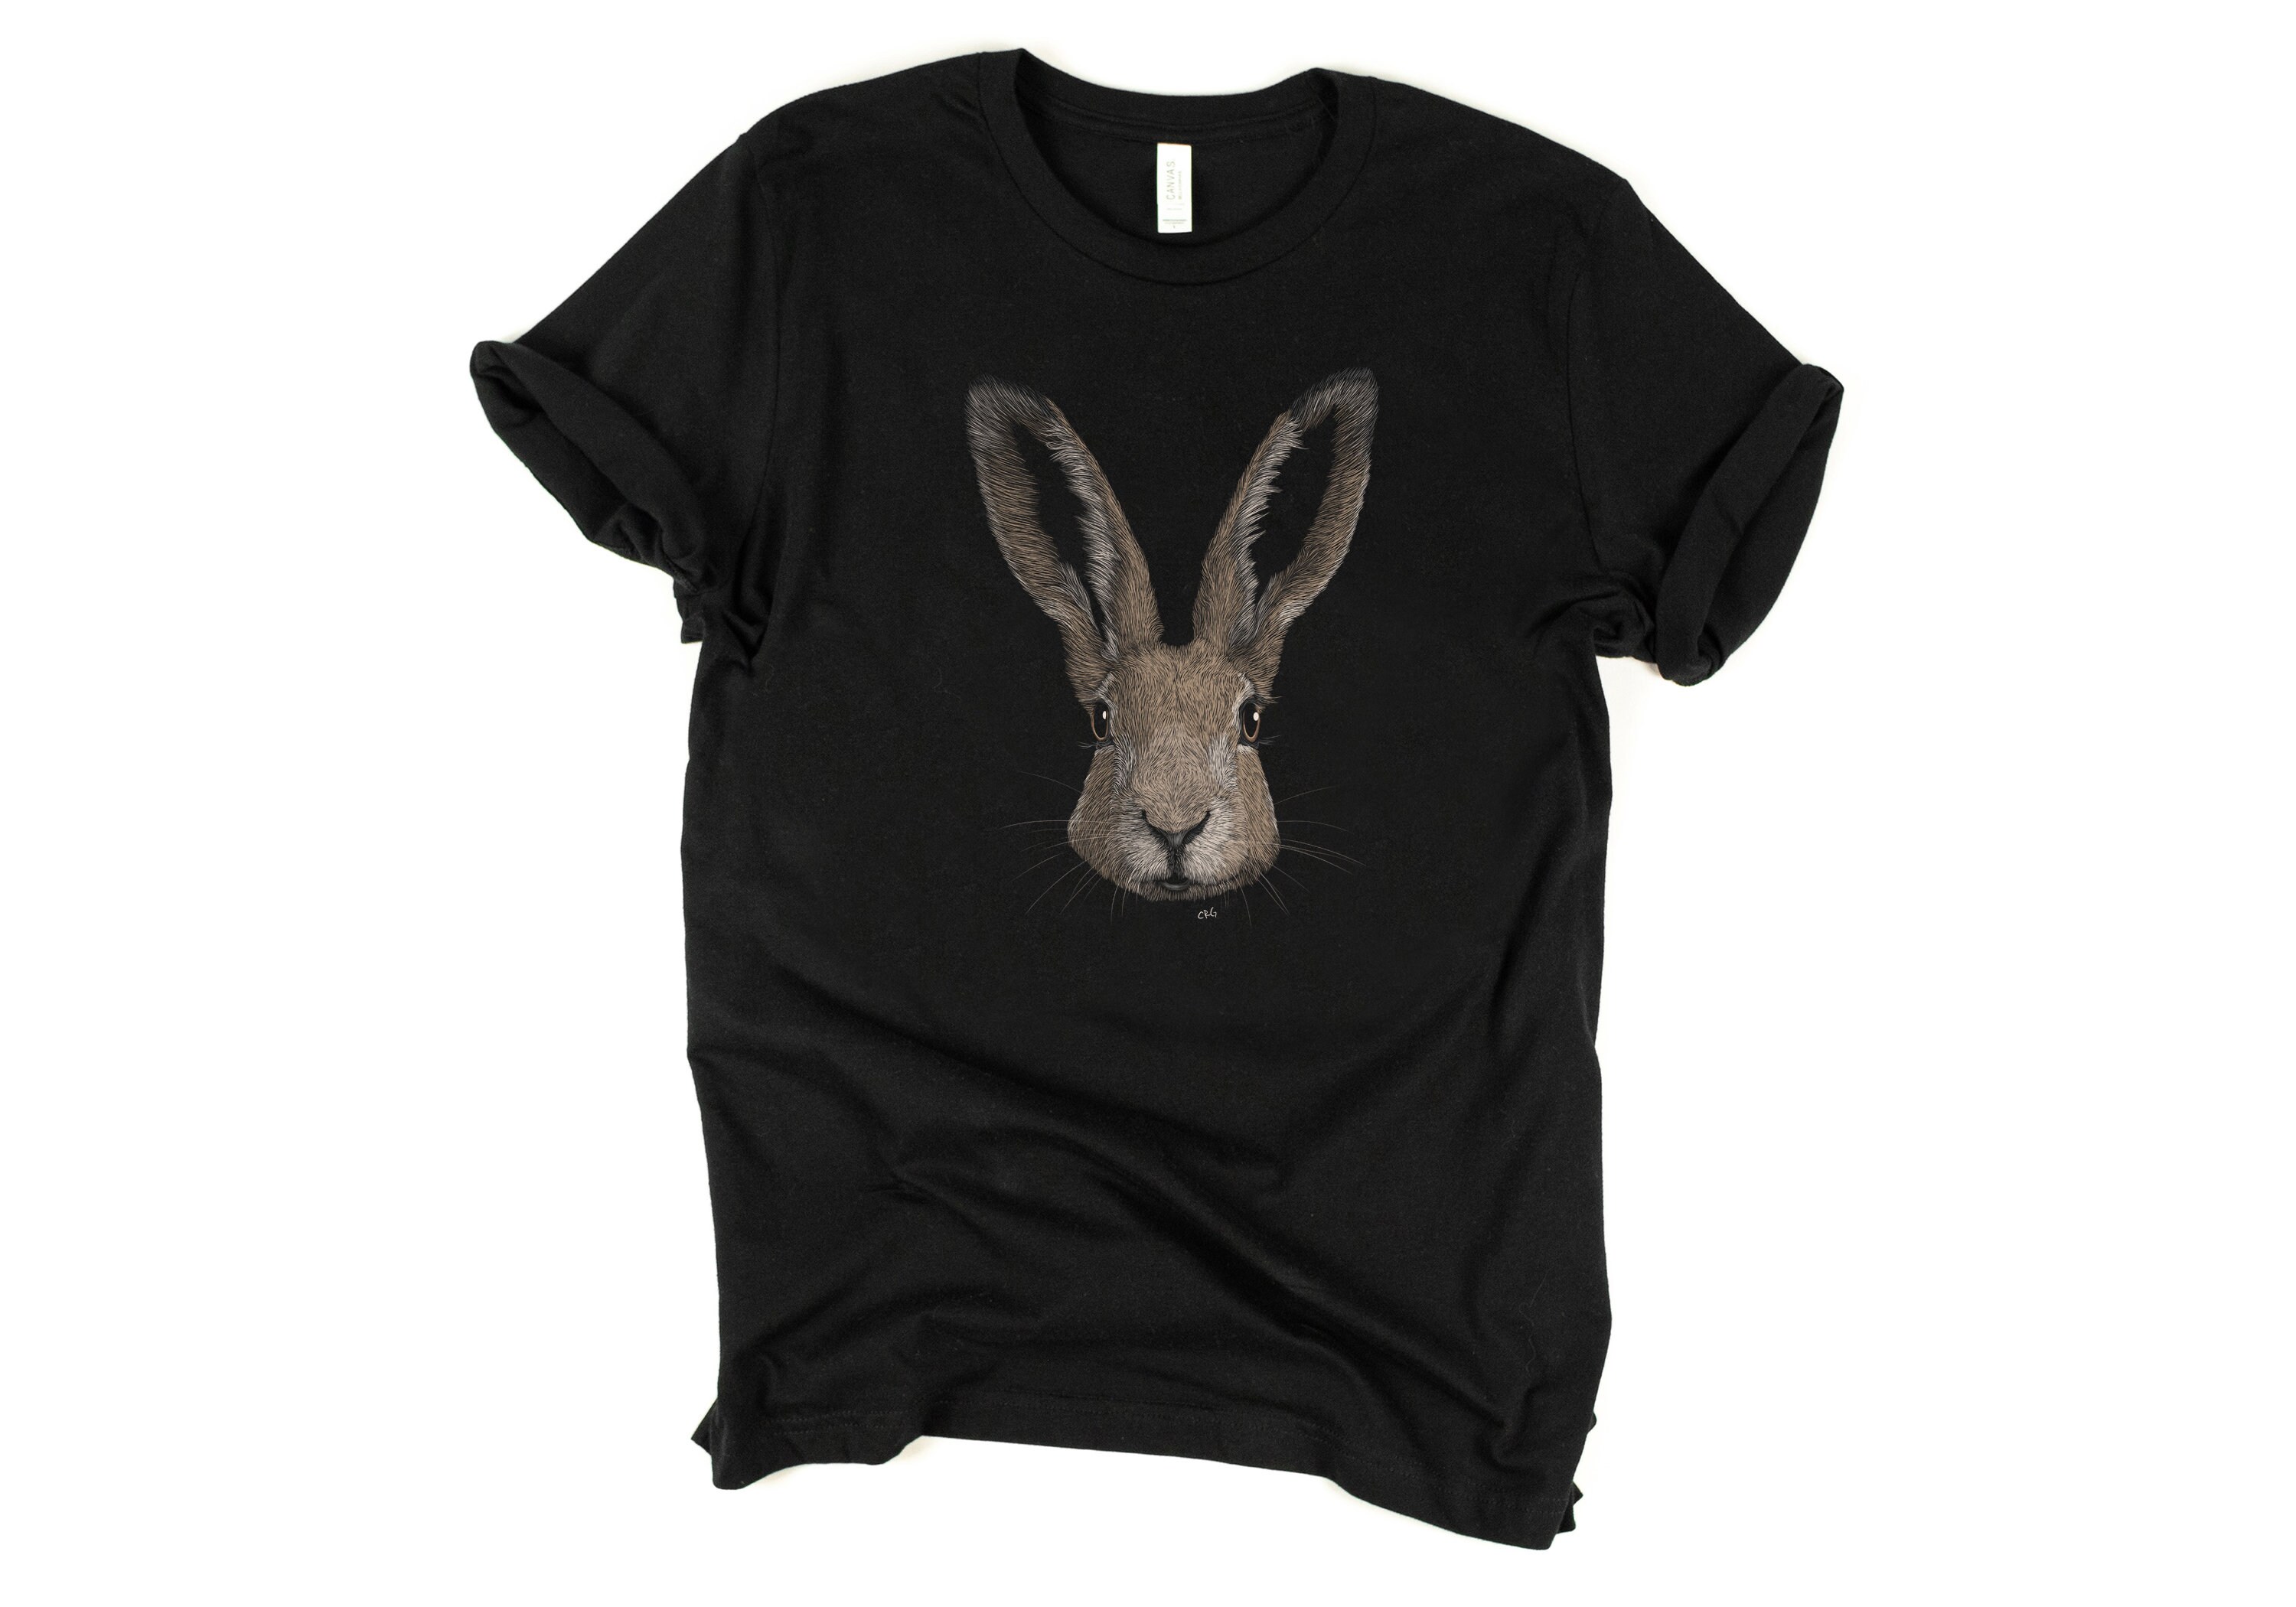 European Hare Shirt / European Hare / Hare Shirt / Hare / | Etsy